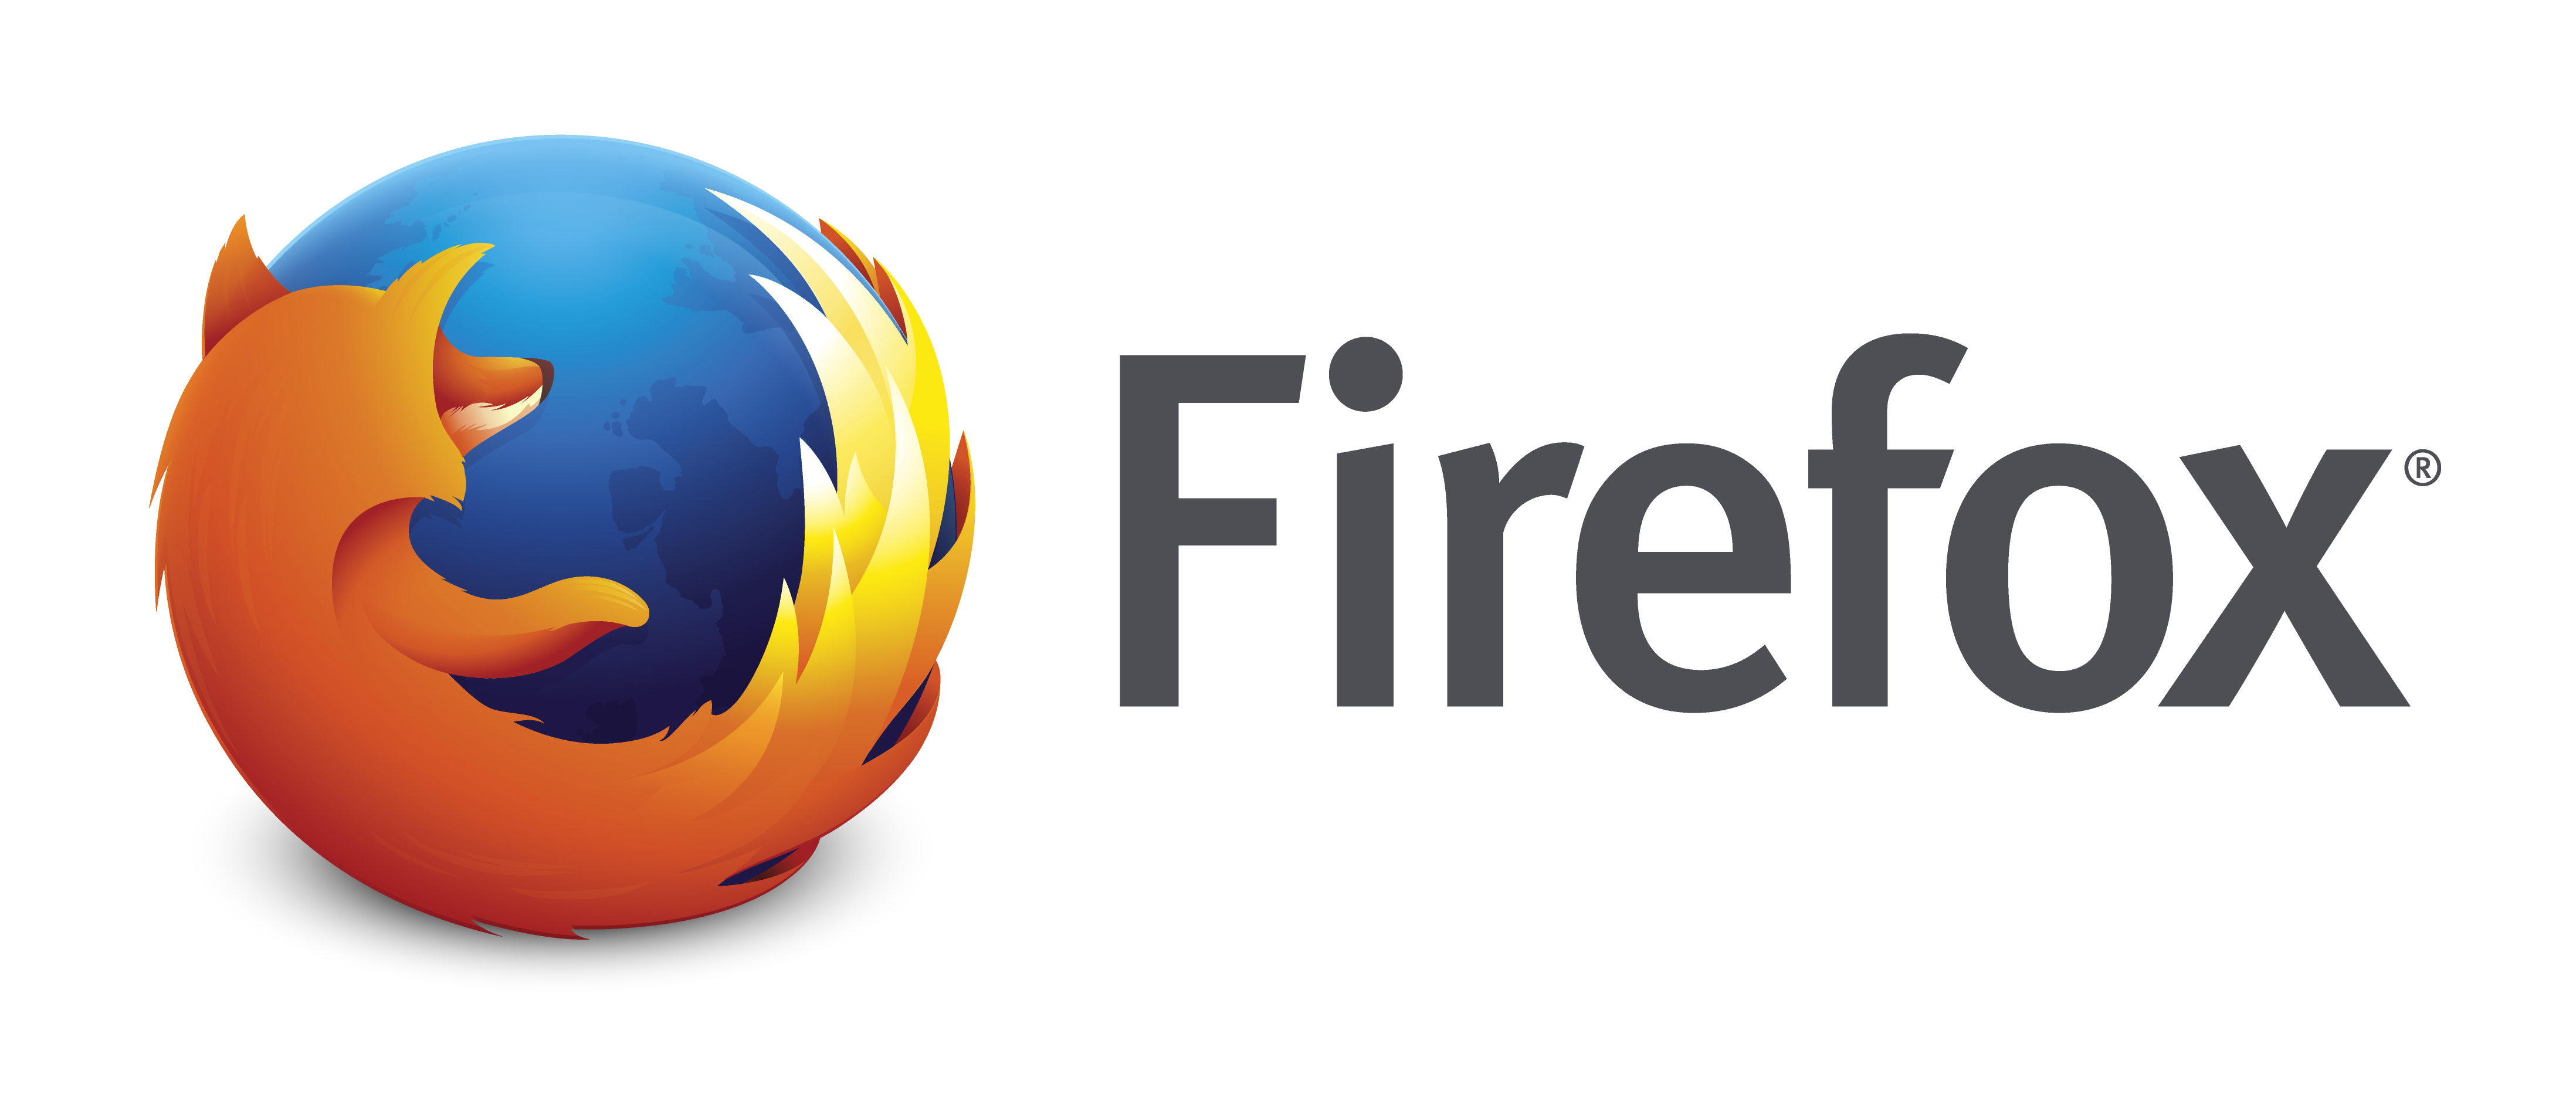 firefox_logo-wordmark-horiz_RGB-300dpi-e1504715809750.jpg